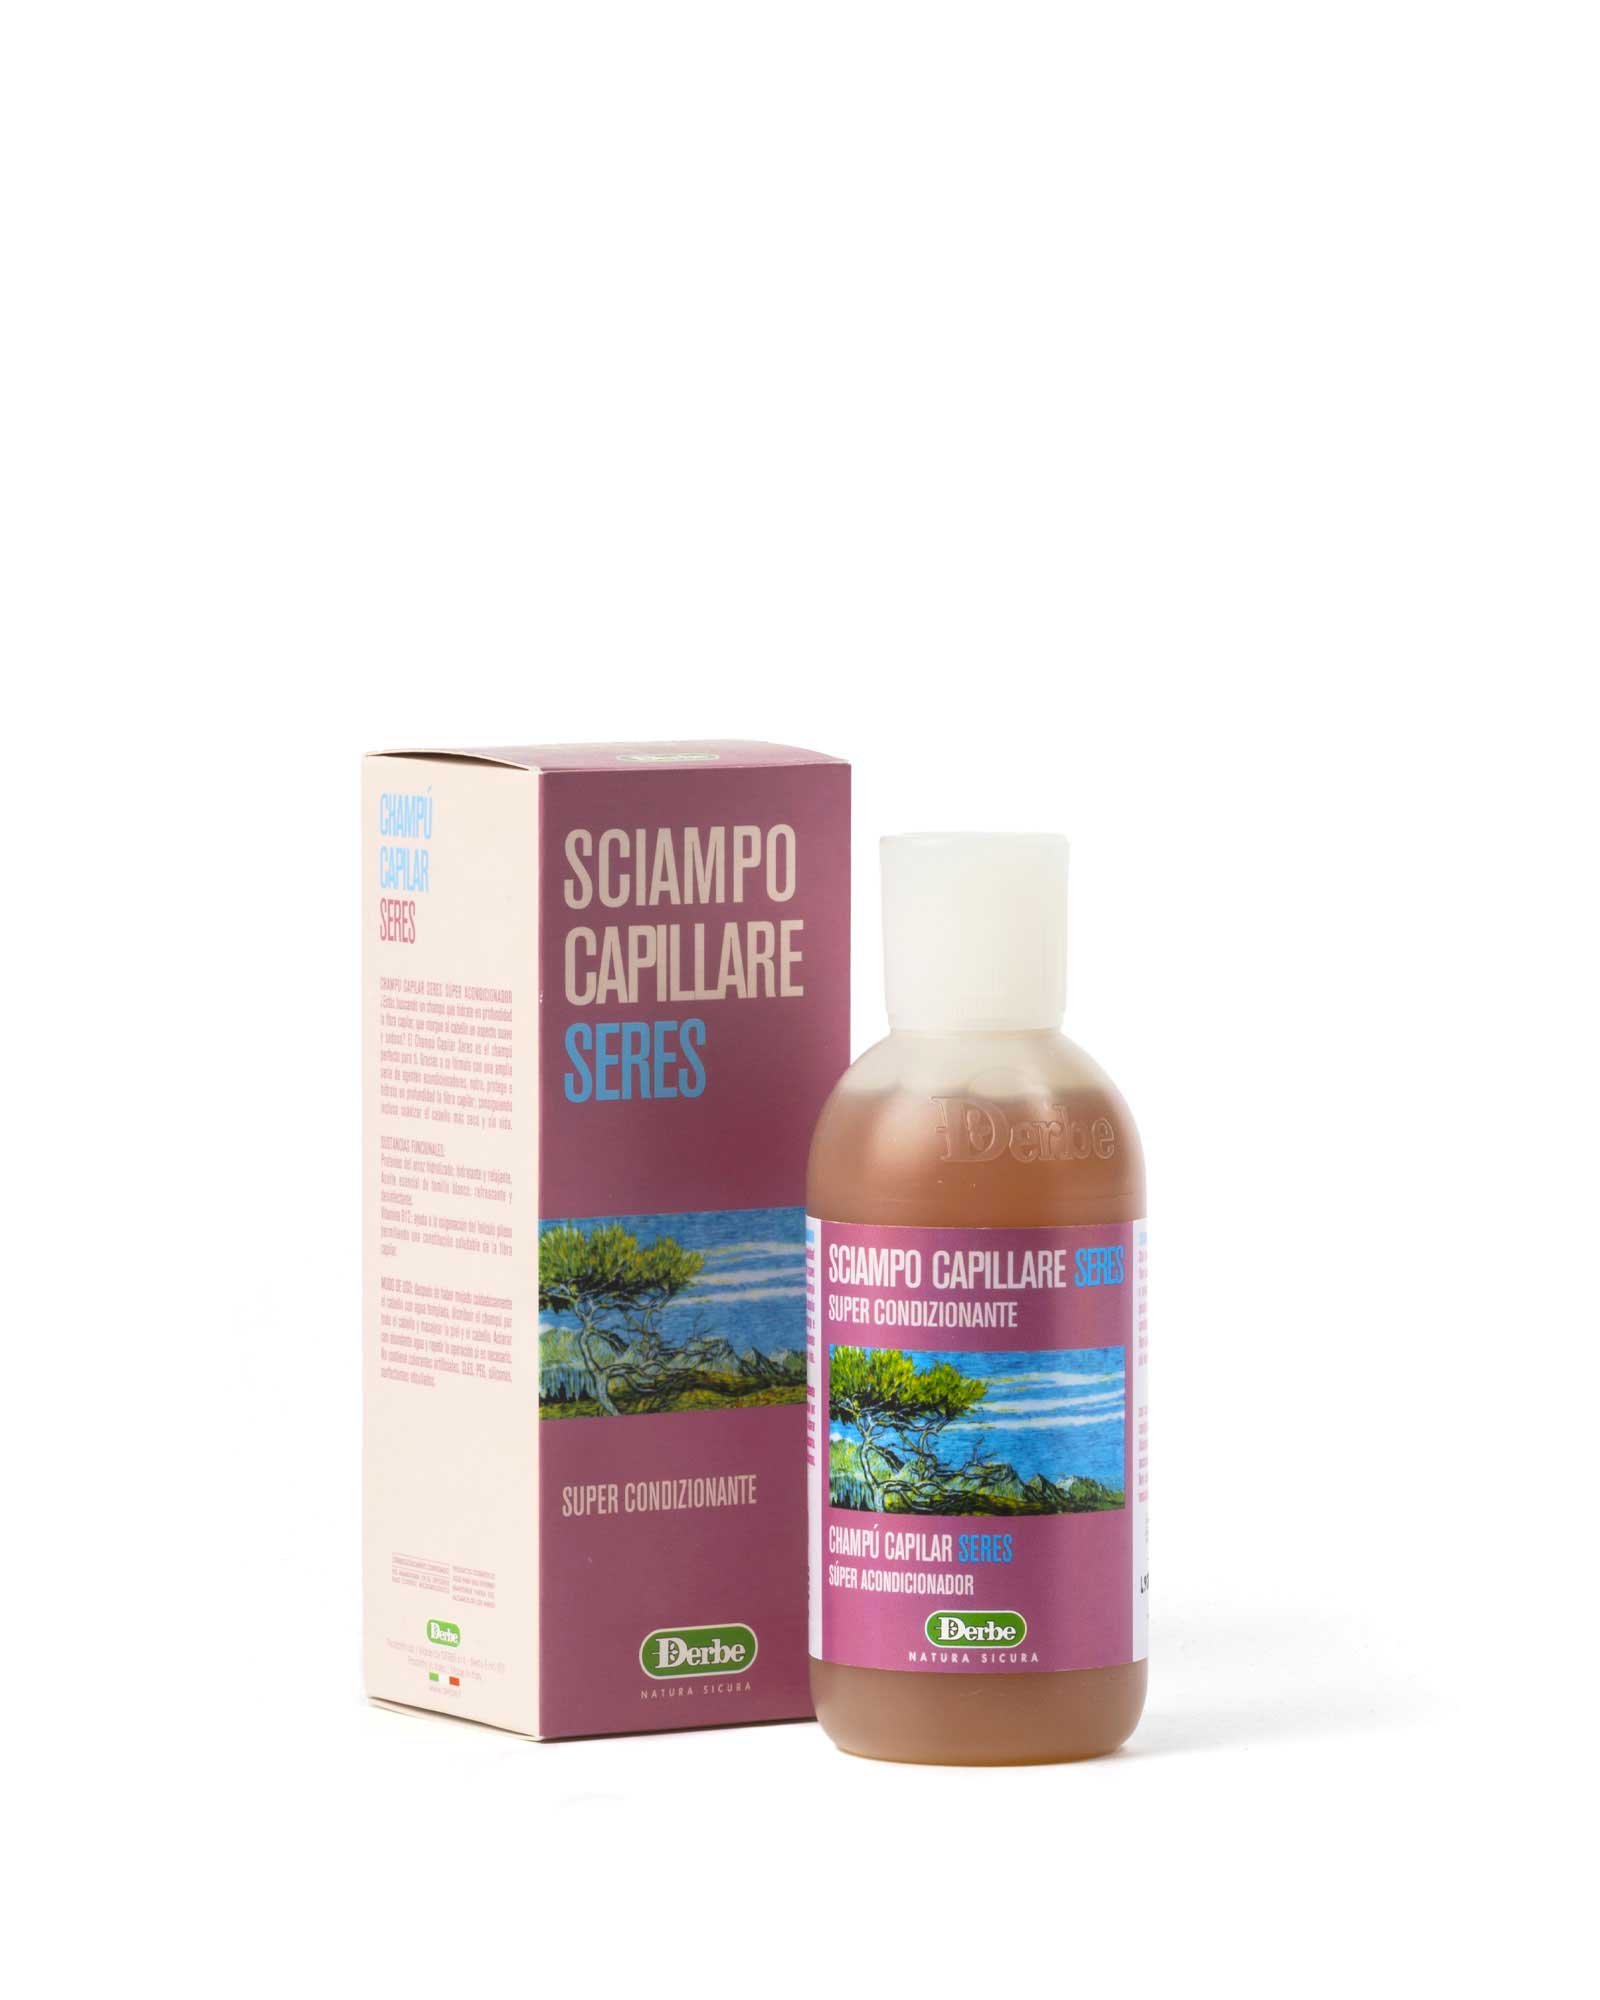 Shampoo capillare – supercondizionante – Derbe